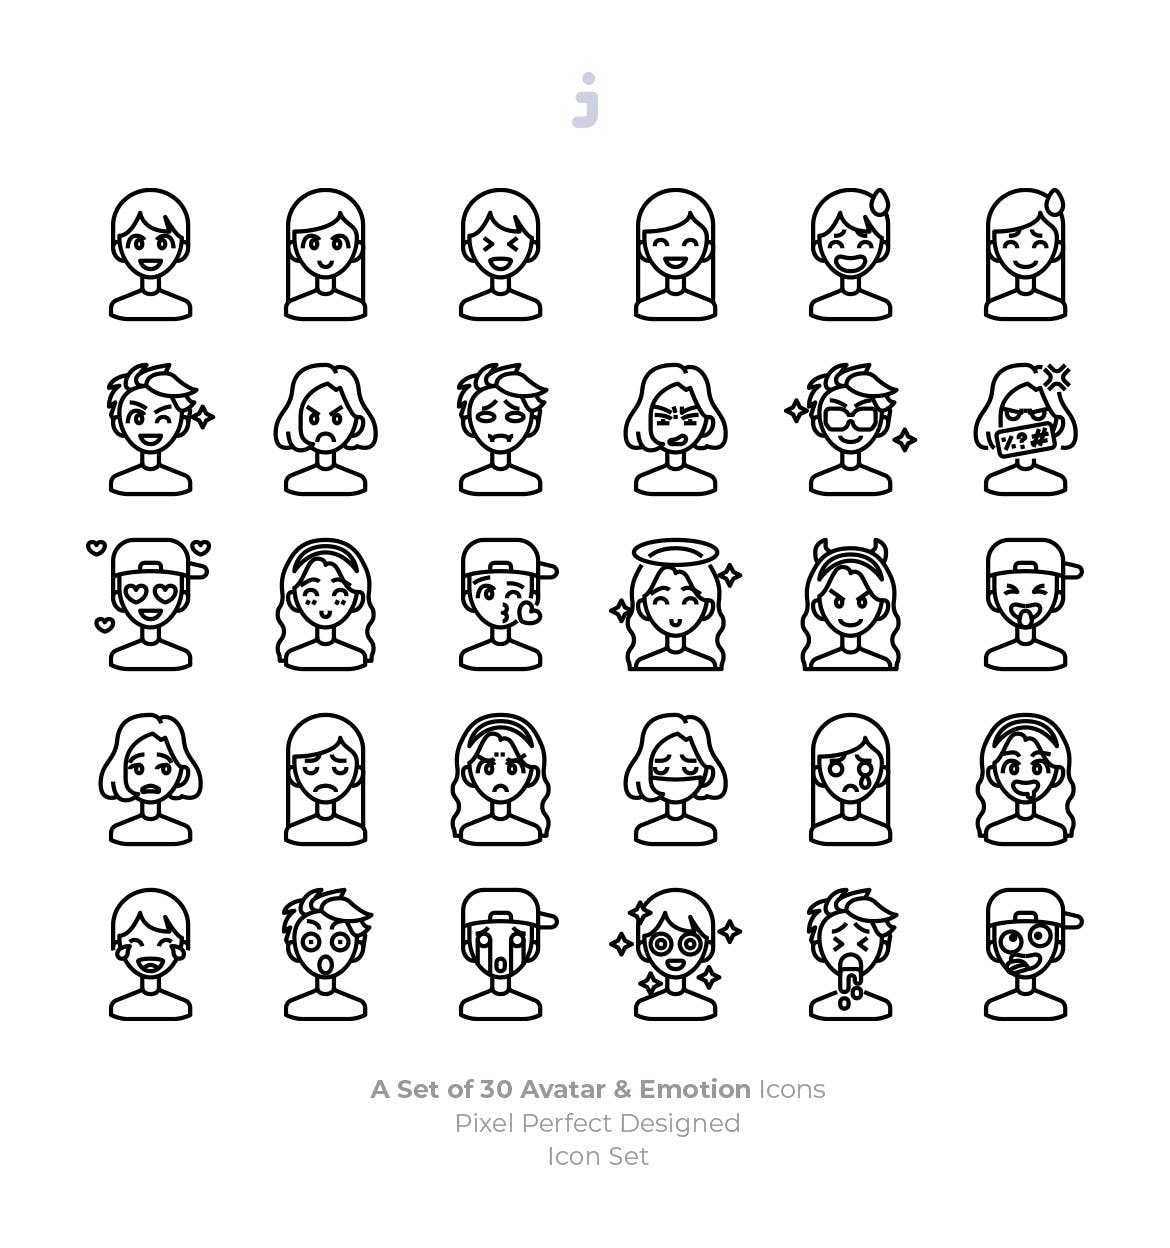 30枚彩色人物头像&表情矢量素材库精选图标 30 Avatar and Emotion Icons插图(2)